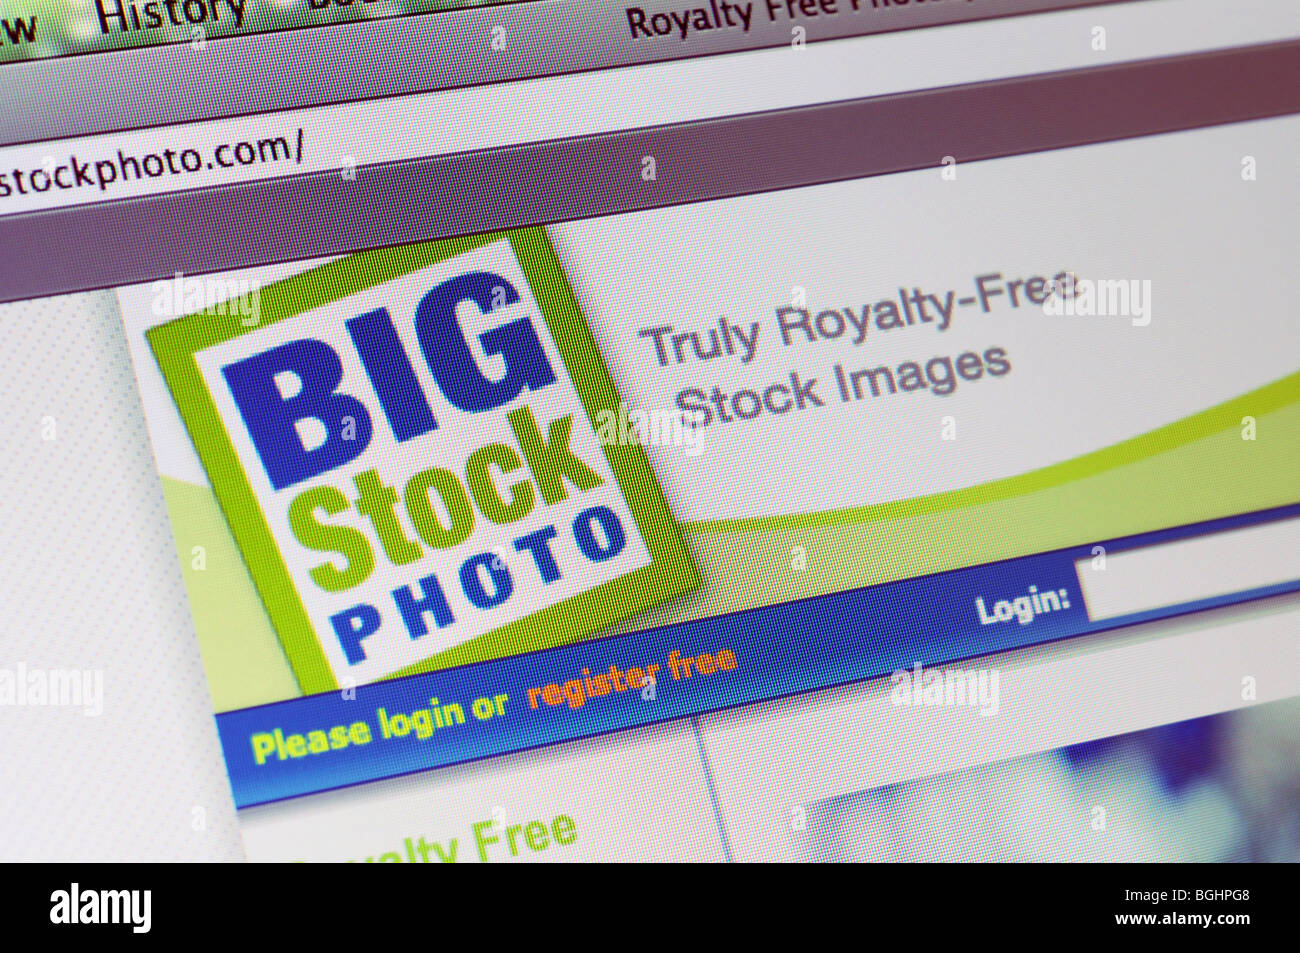 Bigstock Stock Photos & Bigstock Stock Images - Alamy